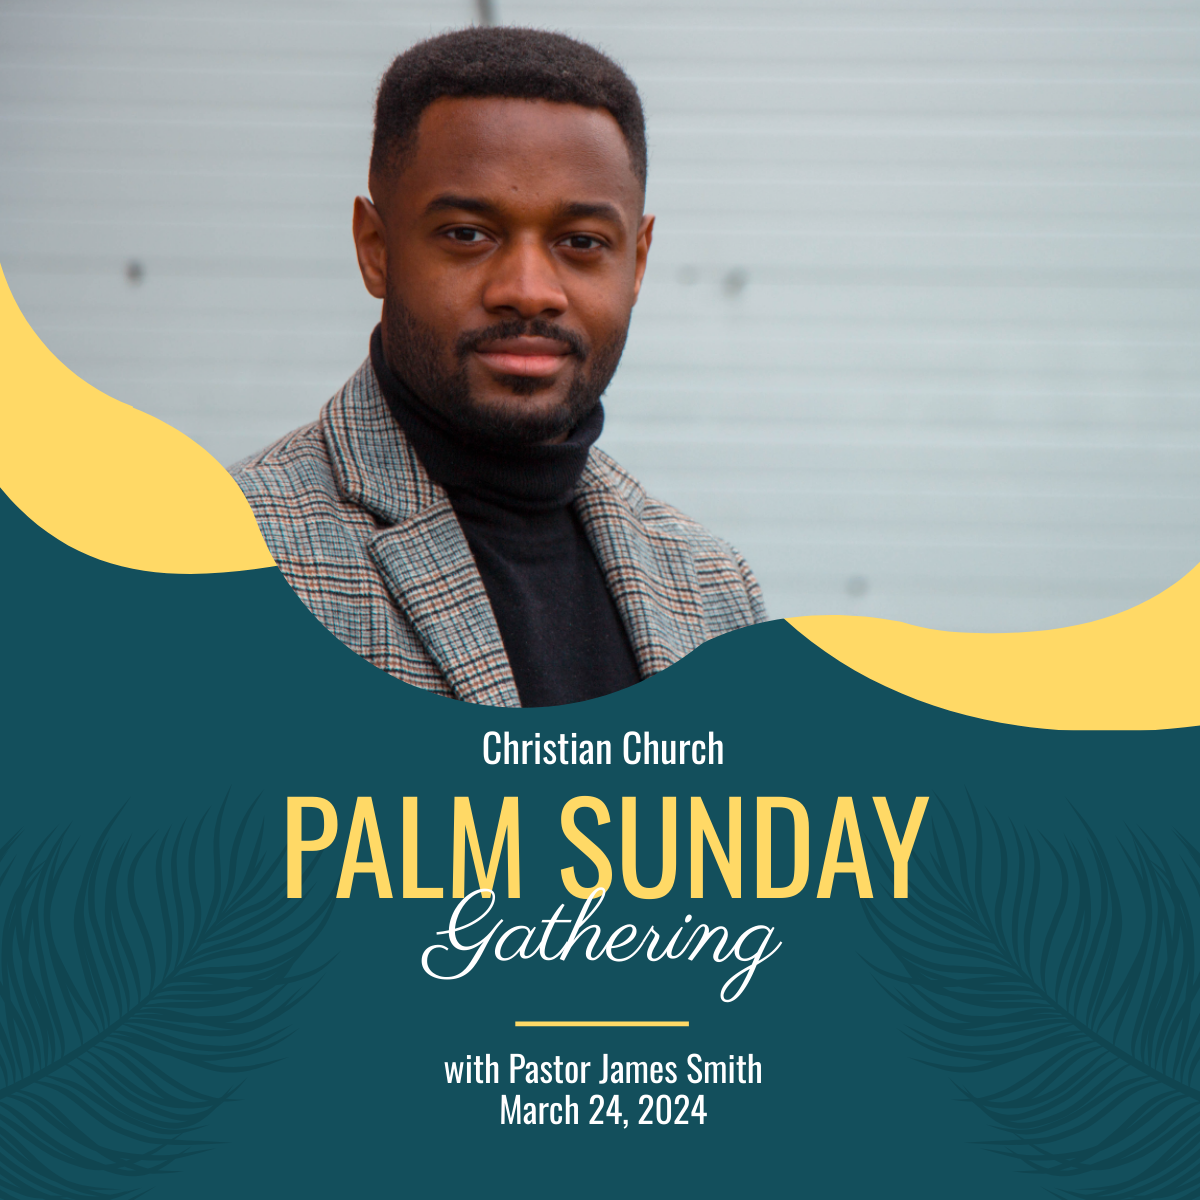 Free Palm Sunday Celebration Linkedin Post Template